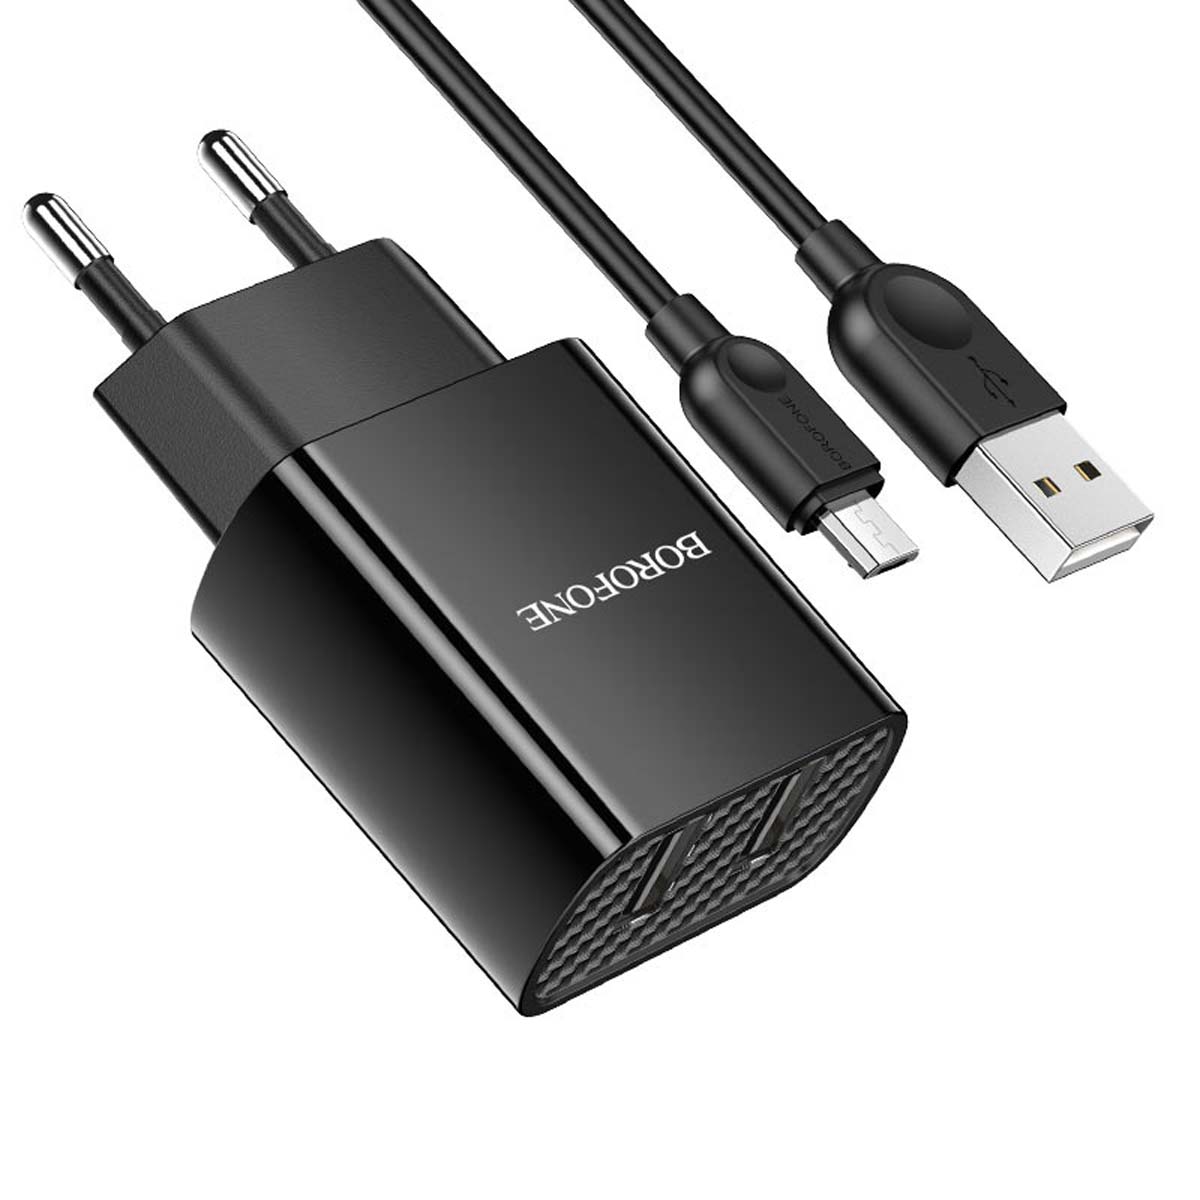 СЗУ (Сетевое зарядное устройство) BOROFONE BA53A Powerway с кабелем Micro USB, 2.1А, длина 1 метр, цвет черный